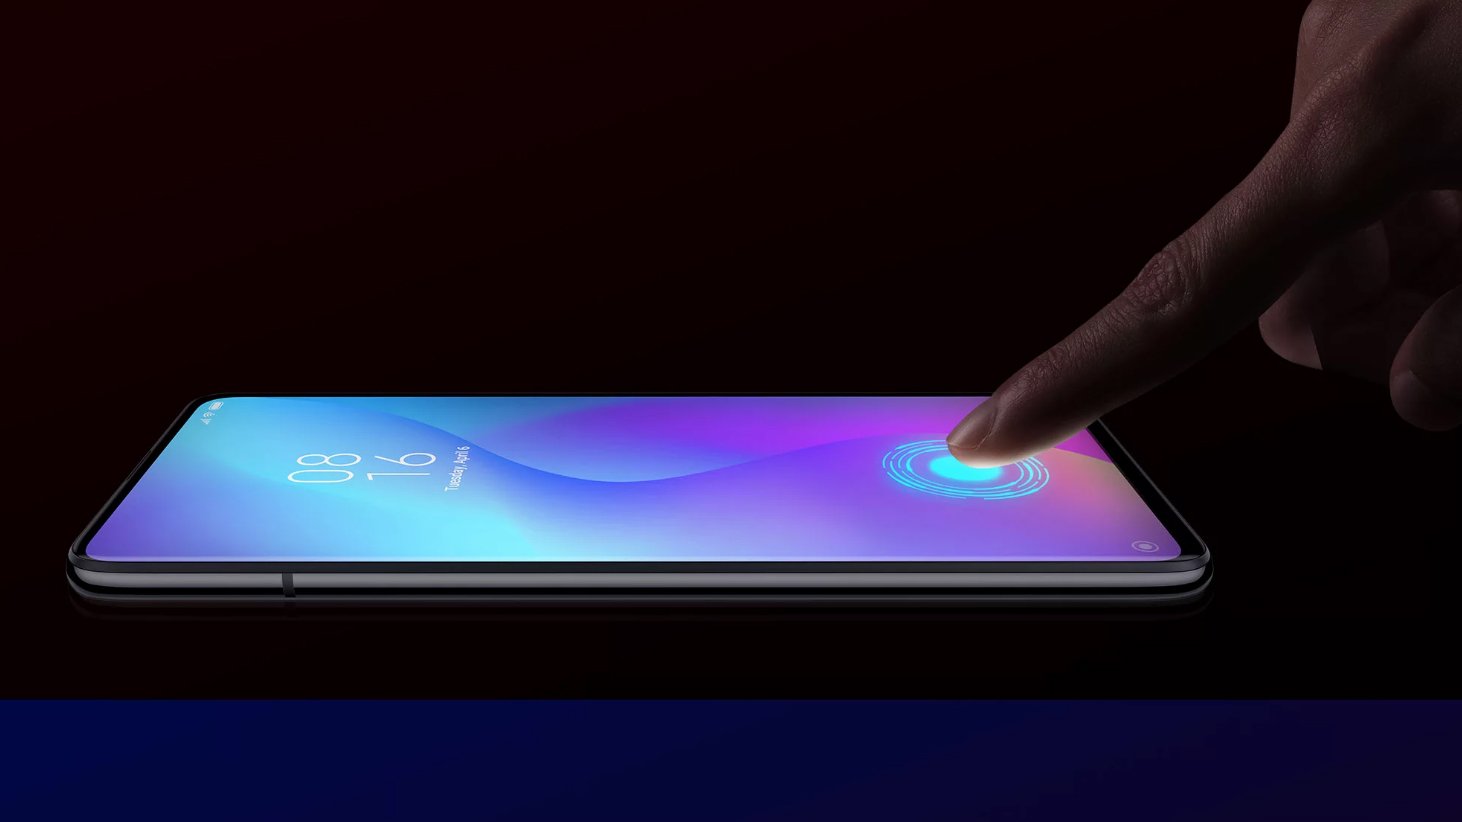 Entsperrt wird das Xiaomi Mi 9T durch einen Fingerabdrucksensor, der im Display sitzt - praktisch!